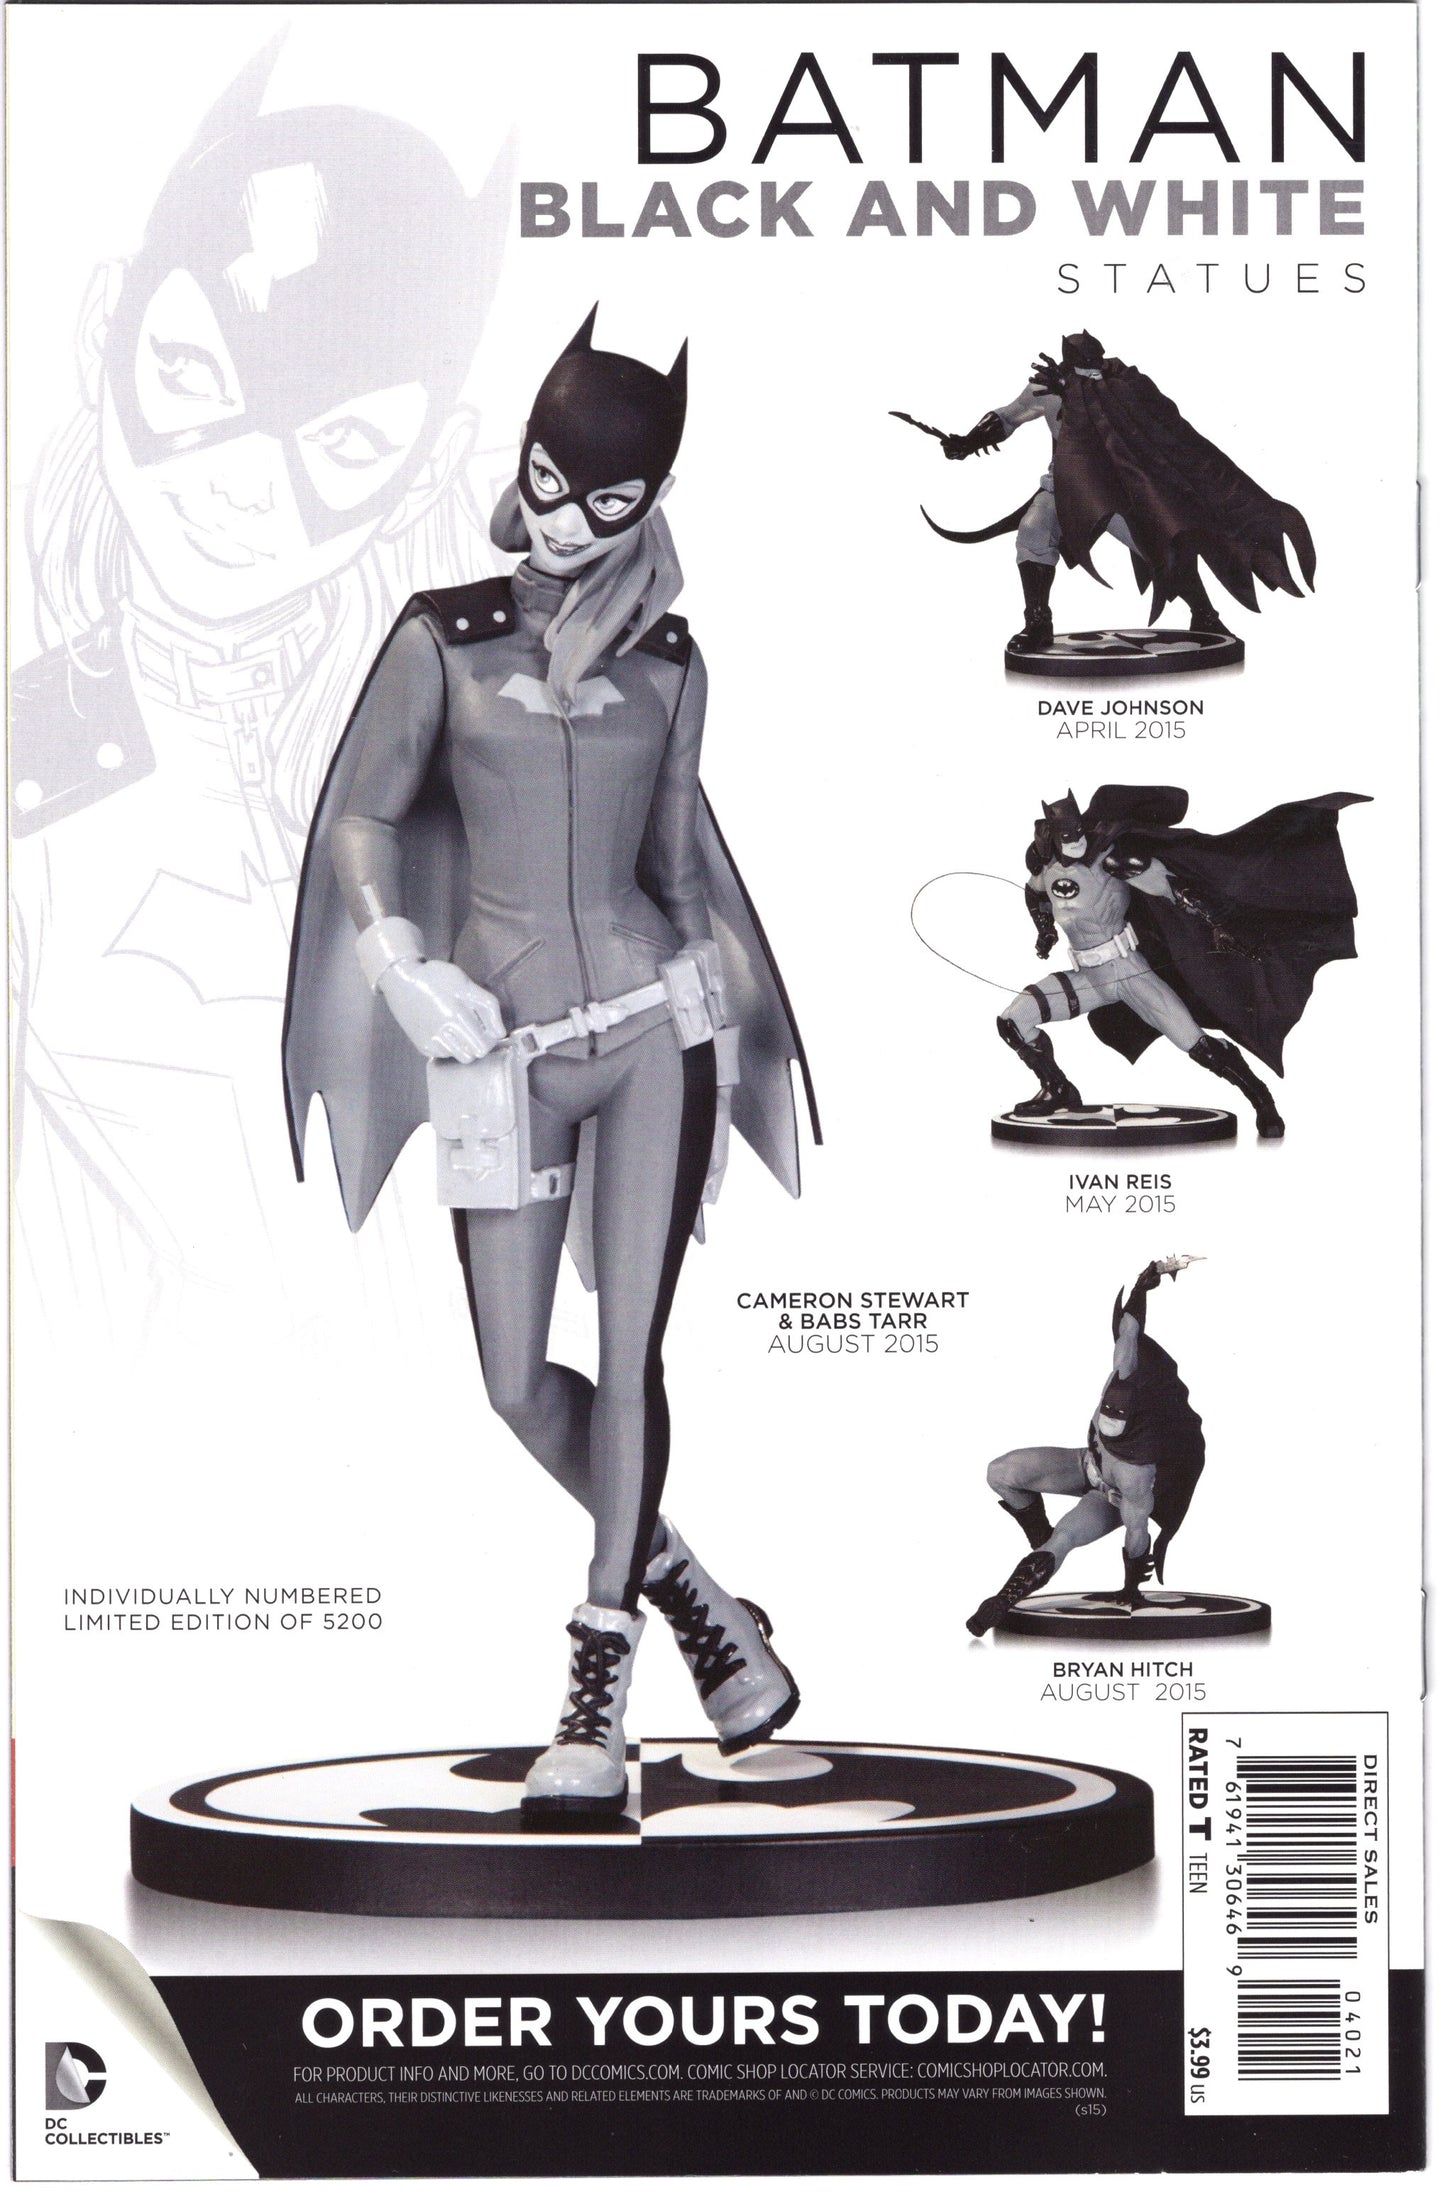 Detective Comics Batman - Issue #40 "Matrix Variant Cover" (May, 2015 - DC Comics) NM-